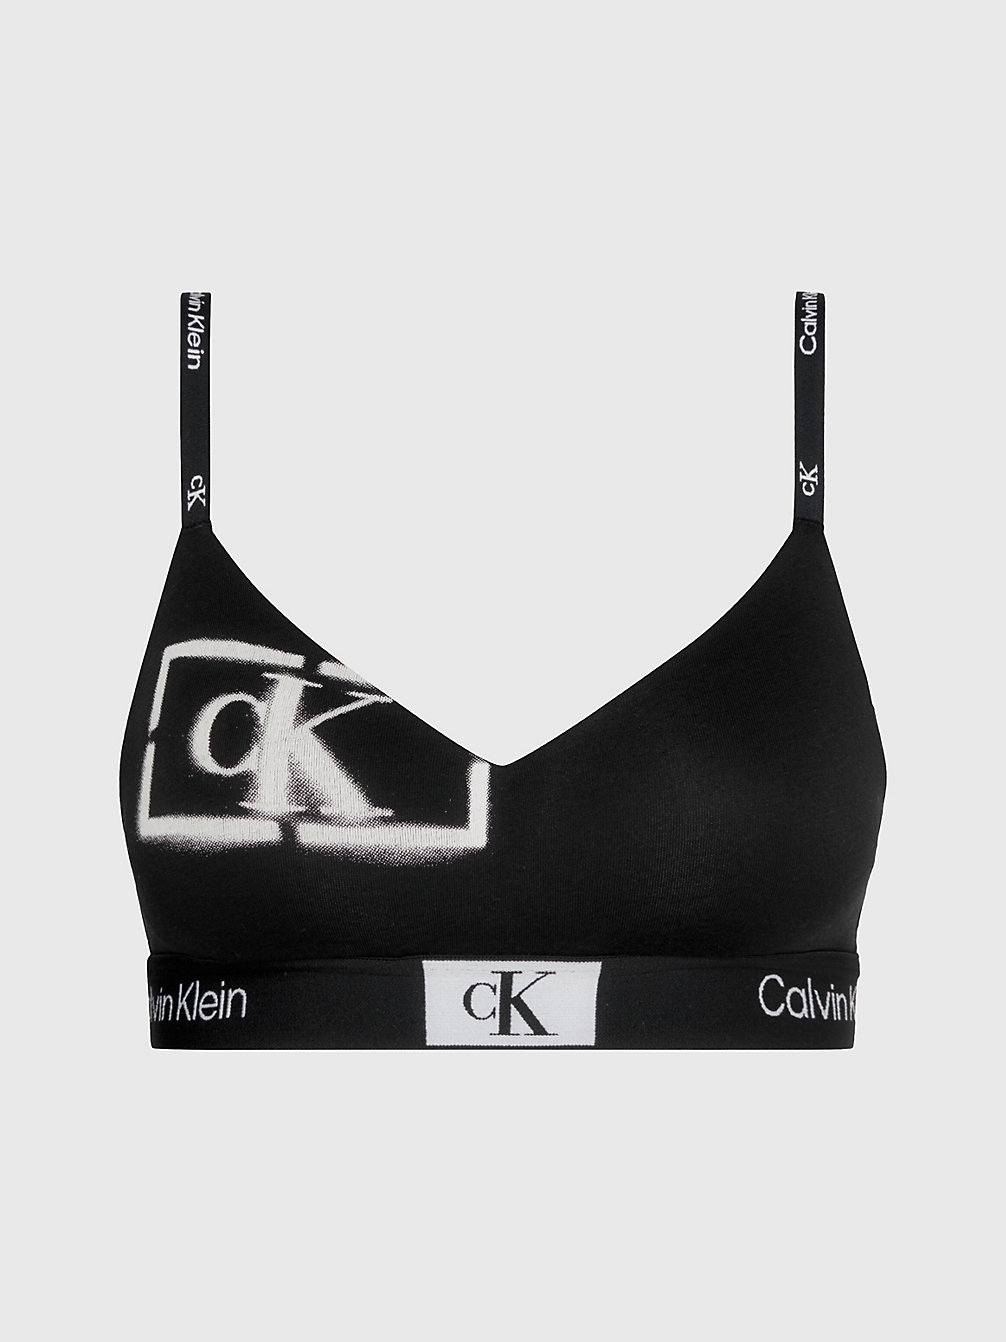 STENCIL LOGO PRINT+BLACK String Bralette - Ck96 undefined women Calvin Klein